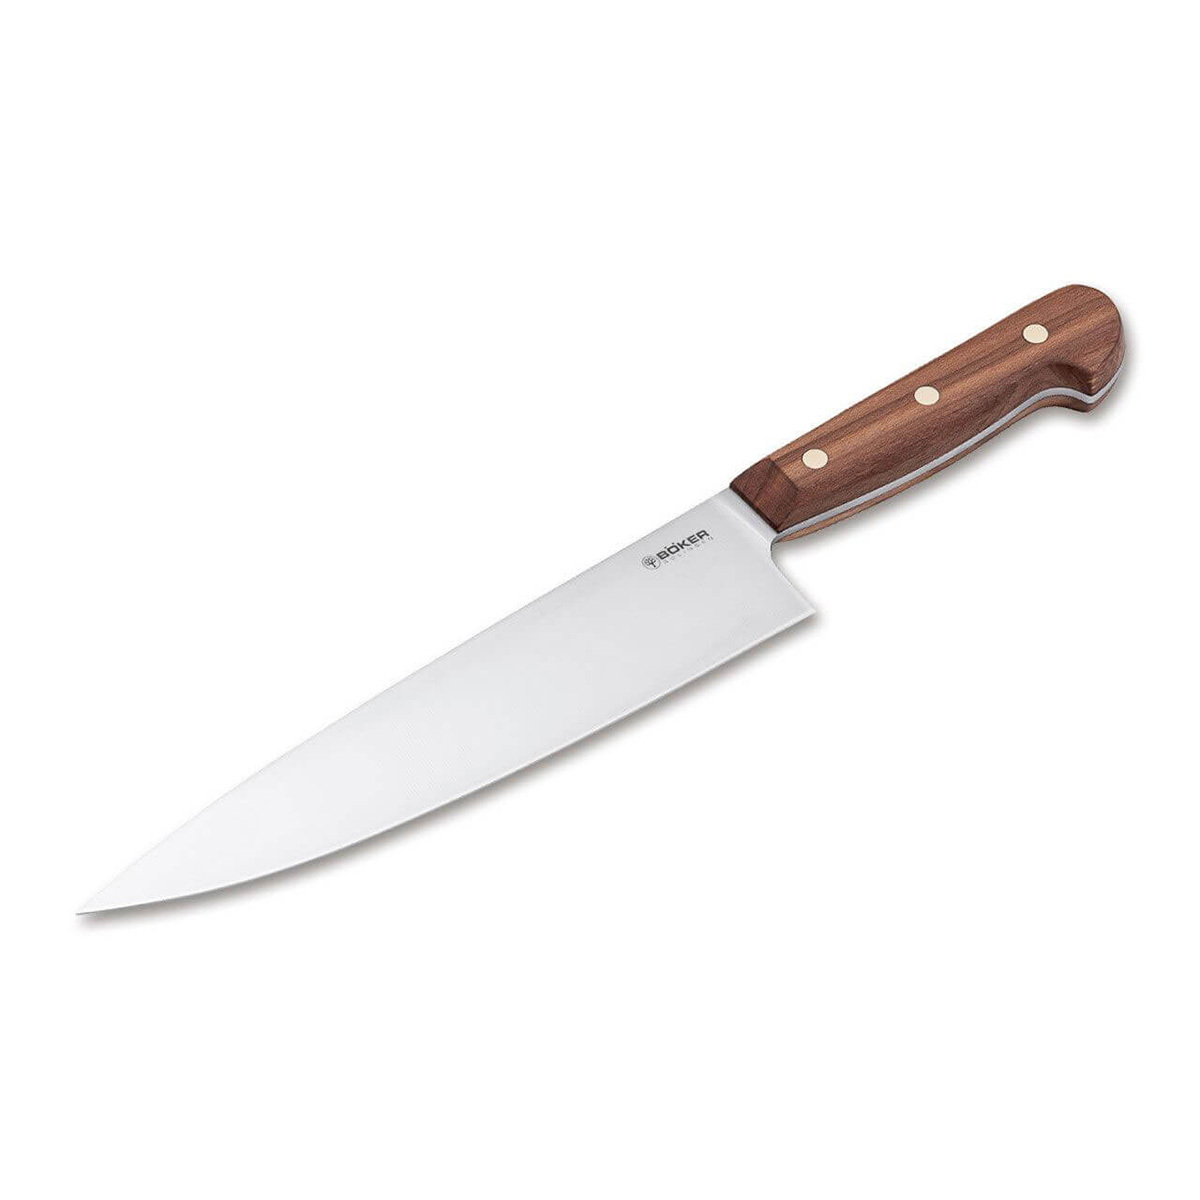 Кухонный нож Boker Cottage-Craft Chef's Knife Large, сталь С75, рукоять дерево - фото 1